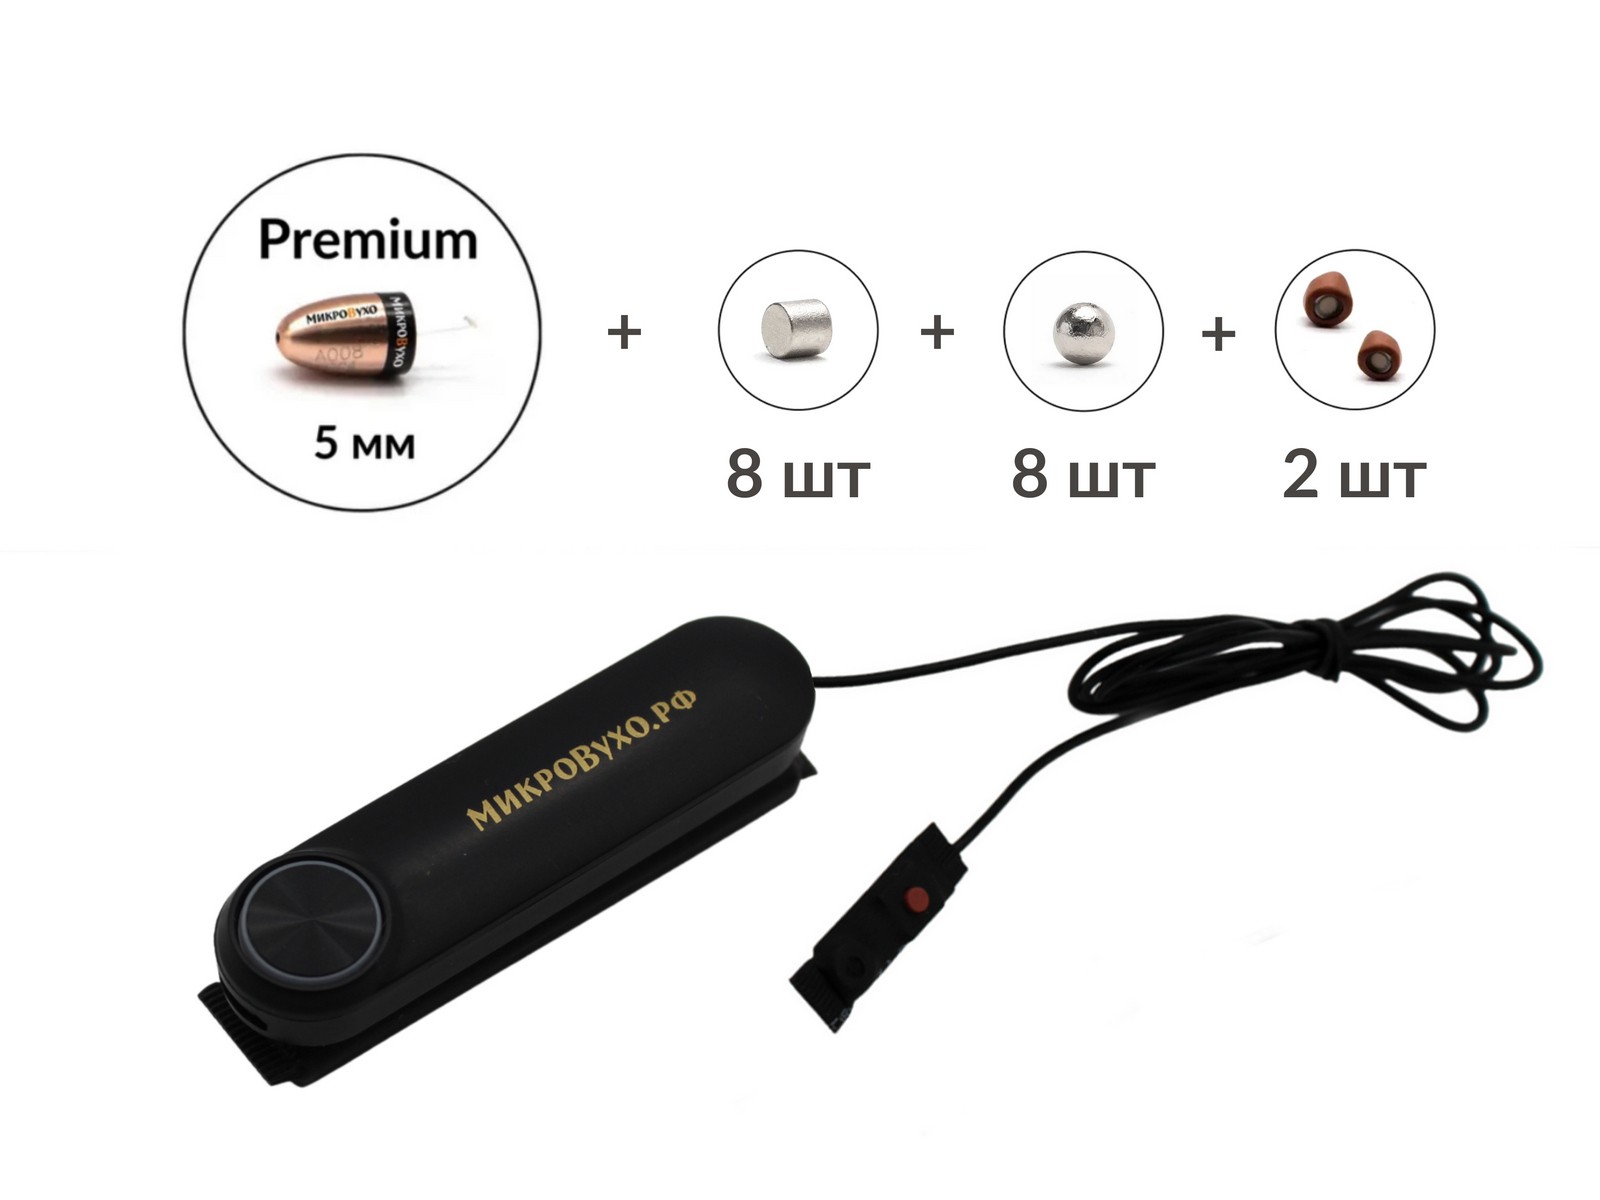 Универсальная гарнитура Bluetooth Box Standard Plus с капсулой Premium и магнитами 2 мм - изображение 5